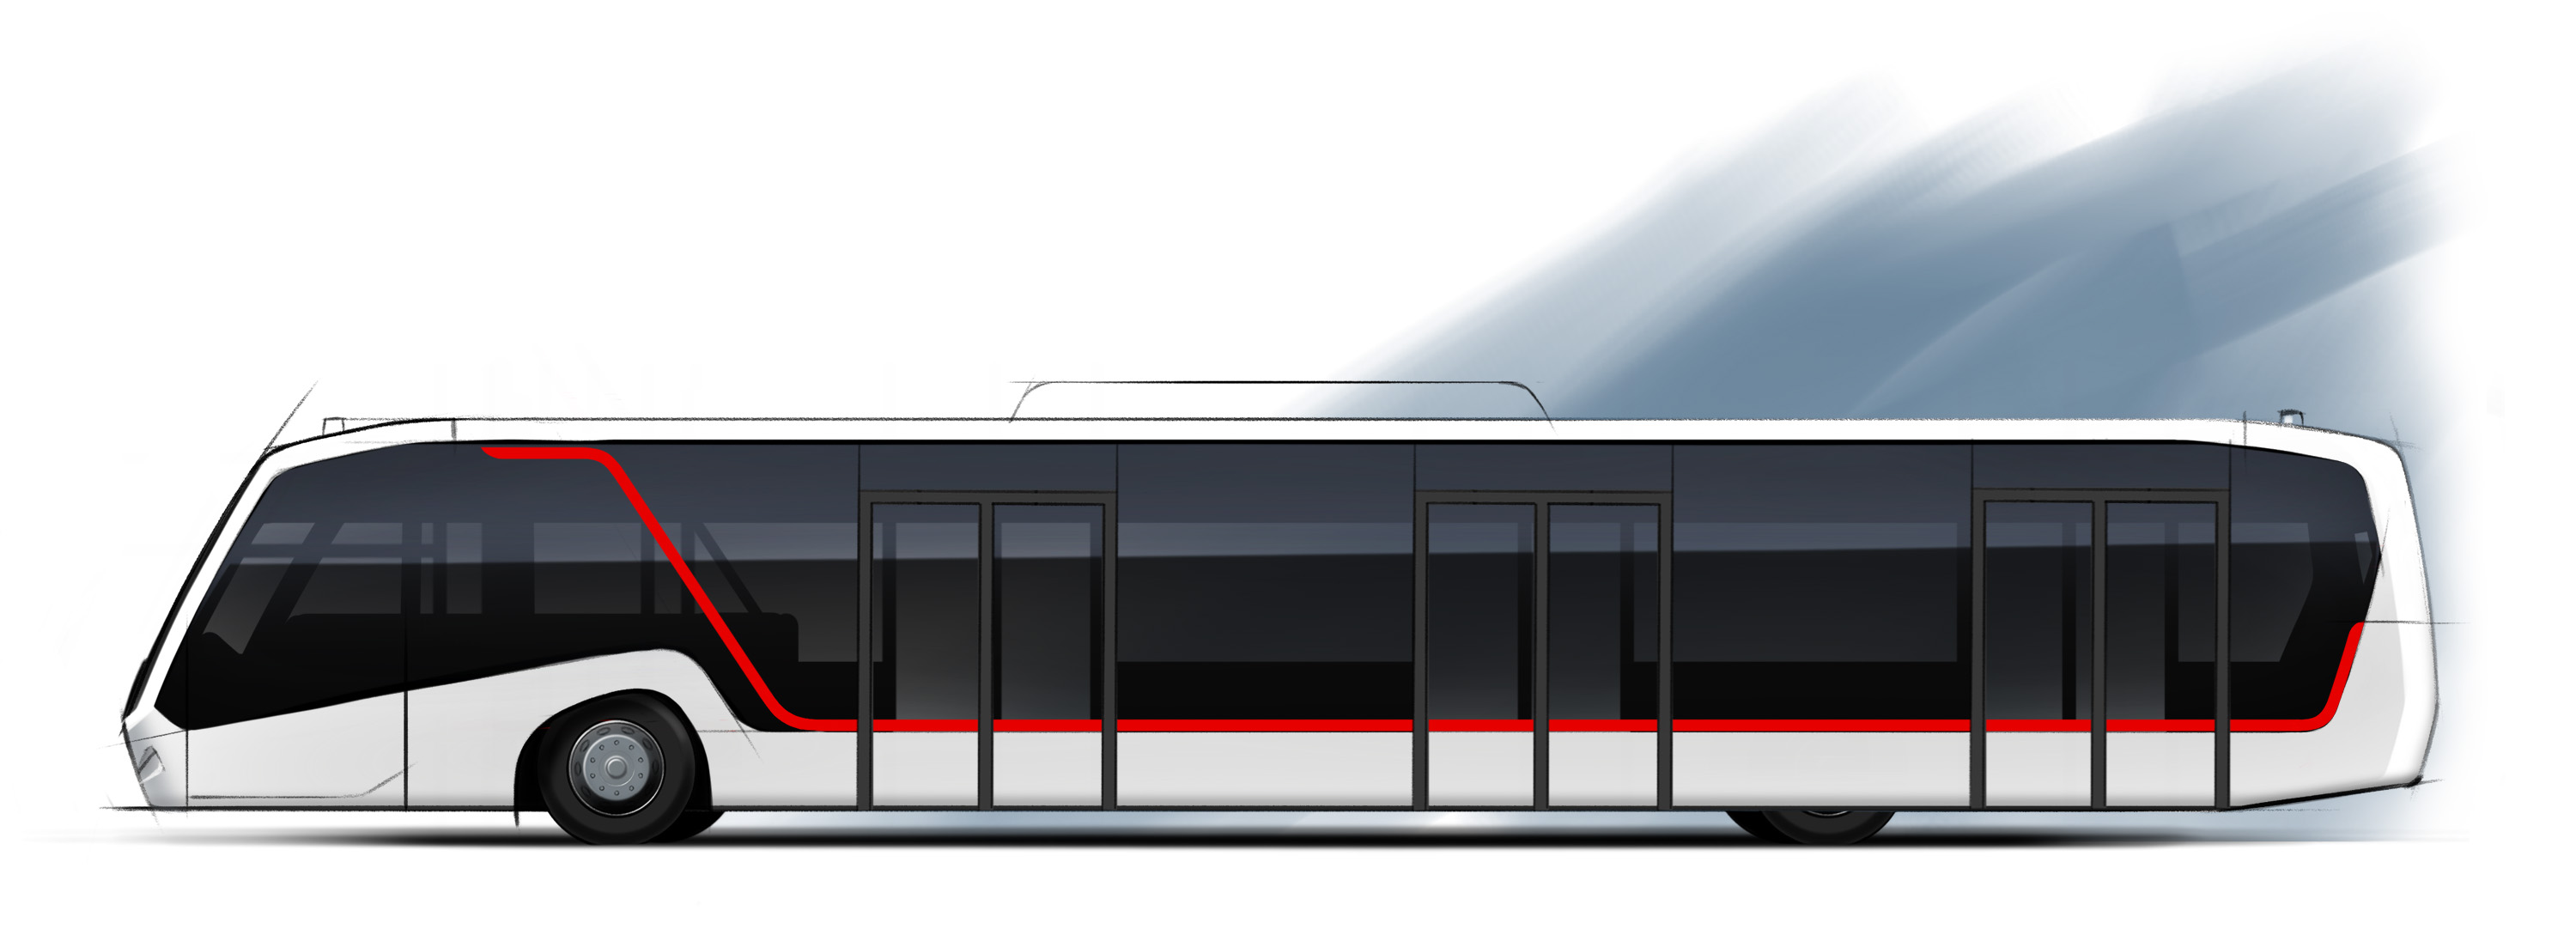 BMC Neoport Apron Bus Sketch